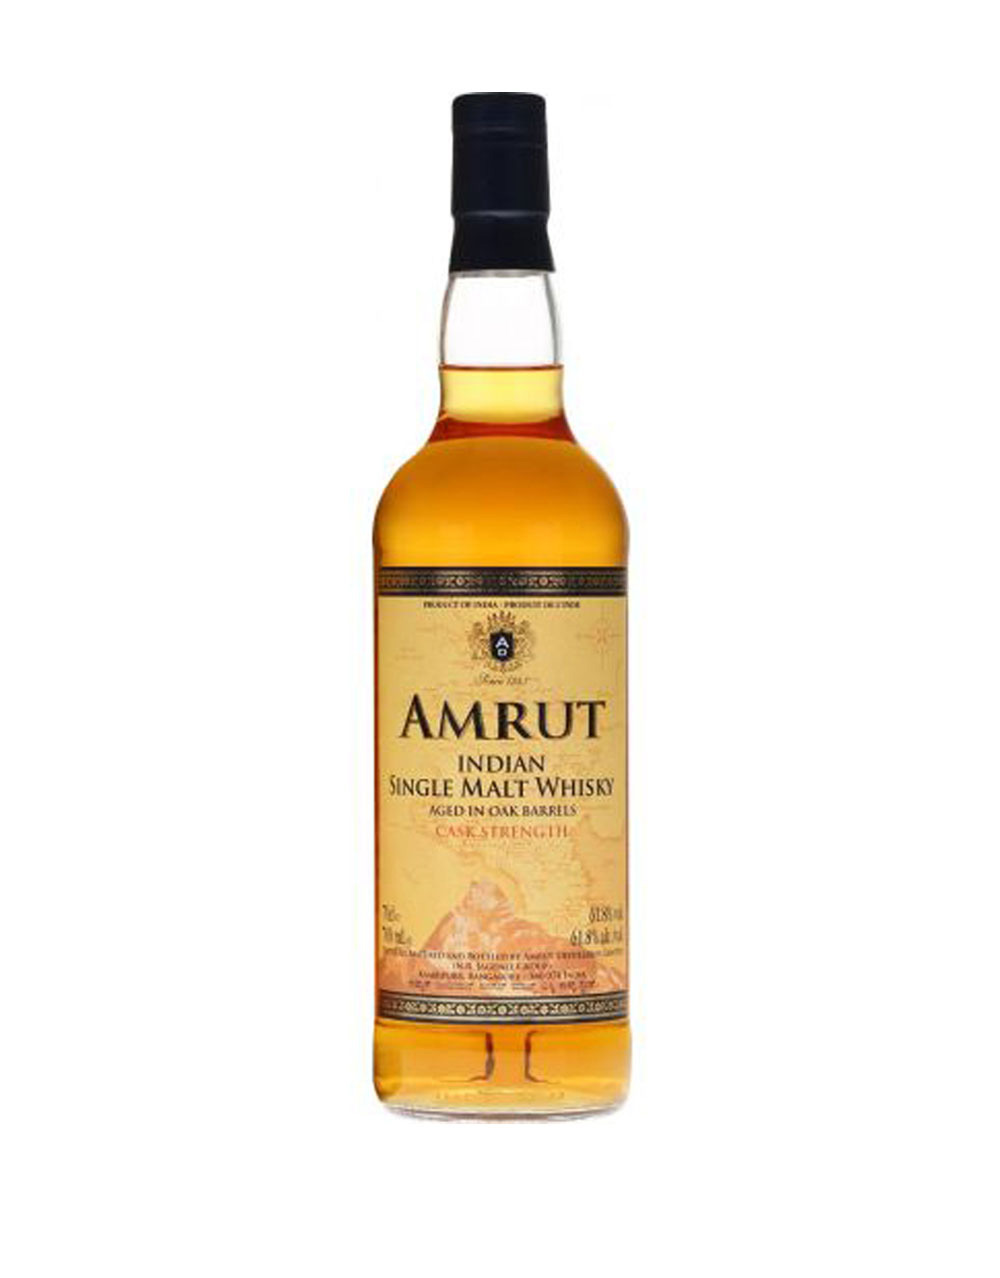 Amrut Cask Strength Indian Single Malt Whisky